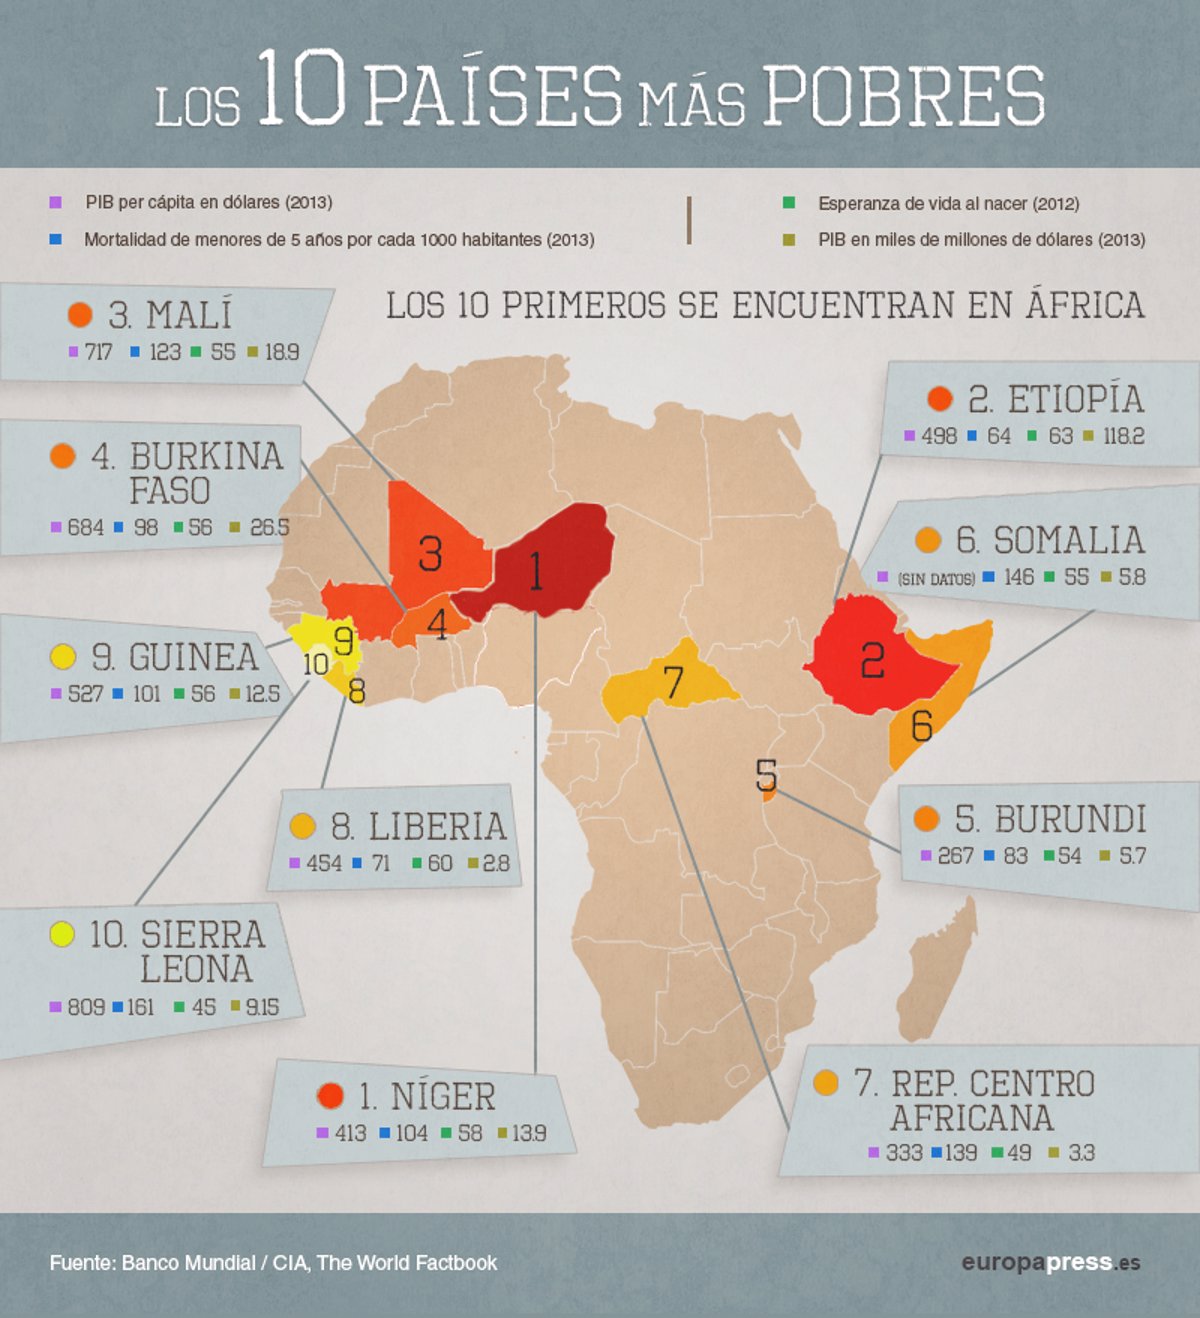 ¿Cuáles son los 3 países más pobres del continente africano?